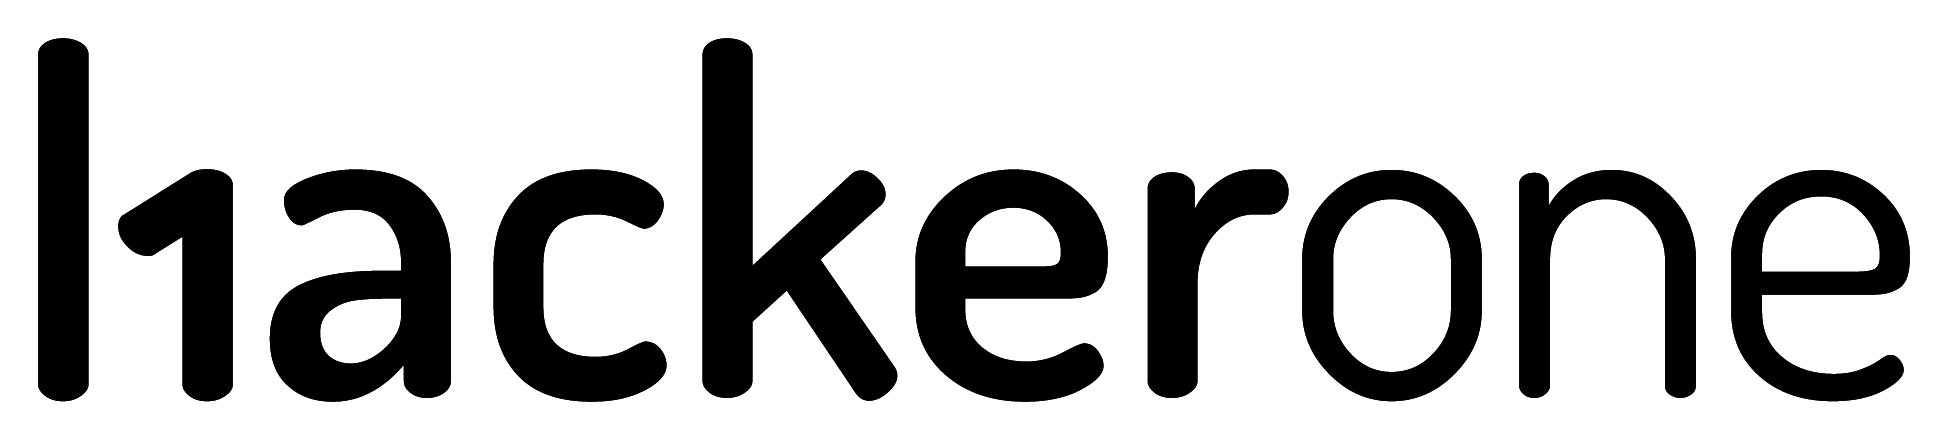 HackerOne logo